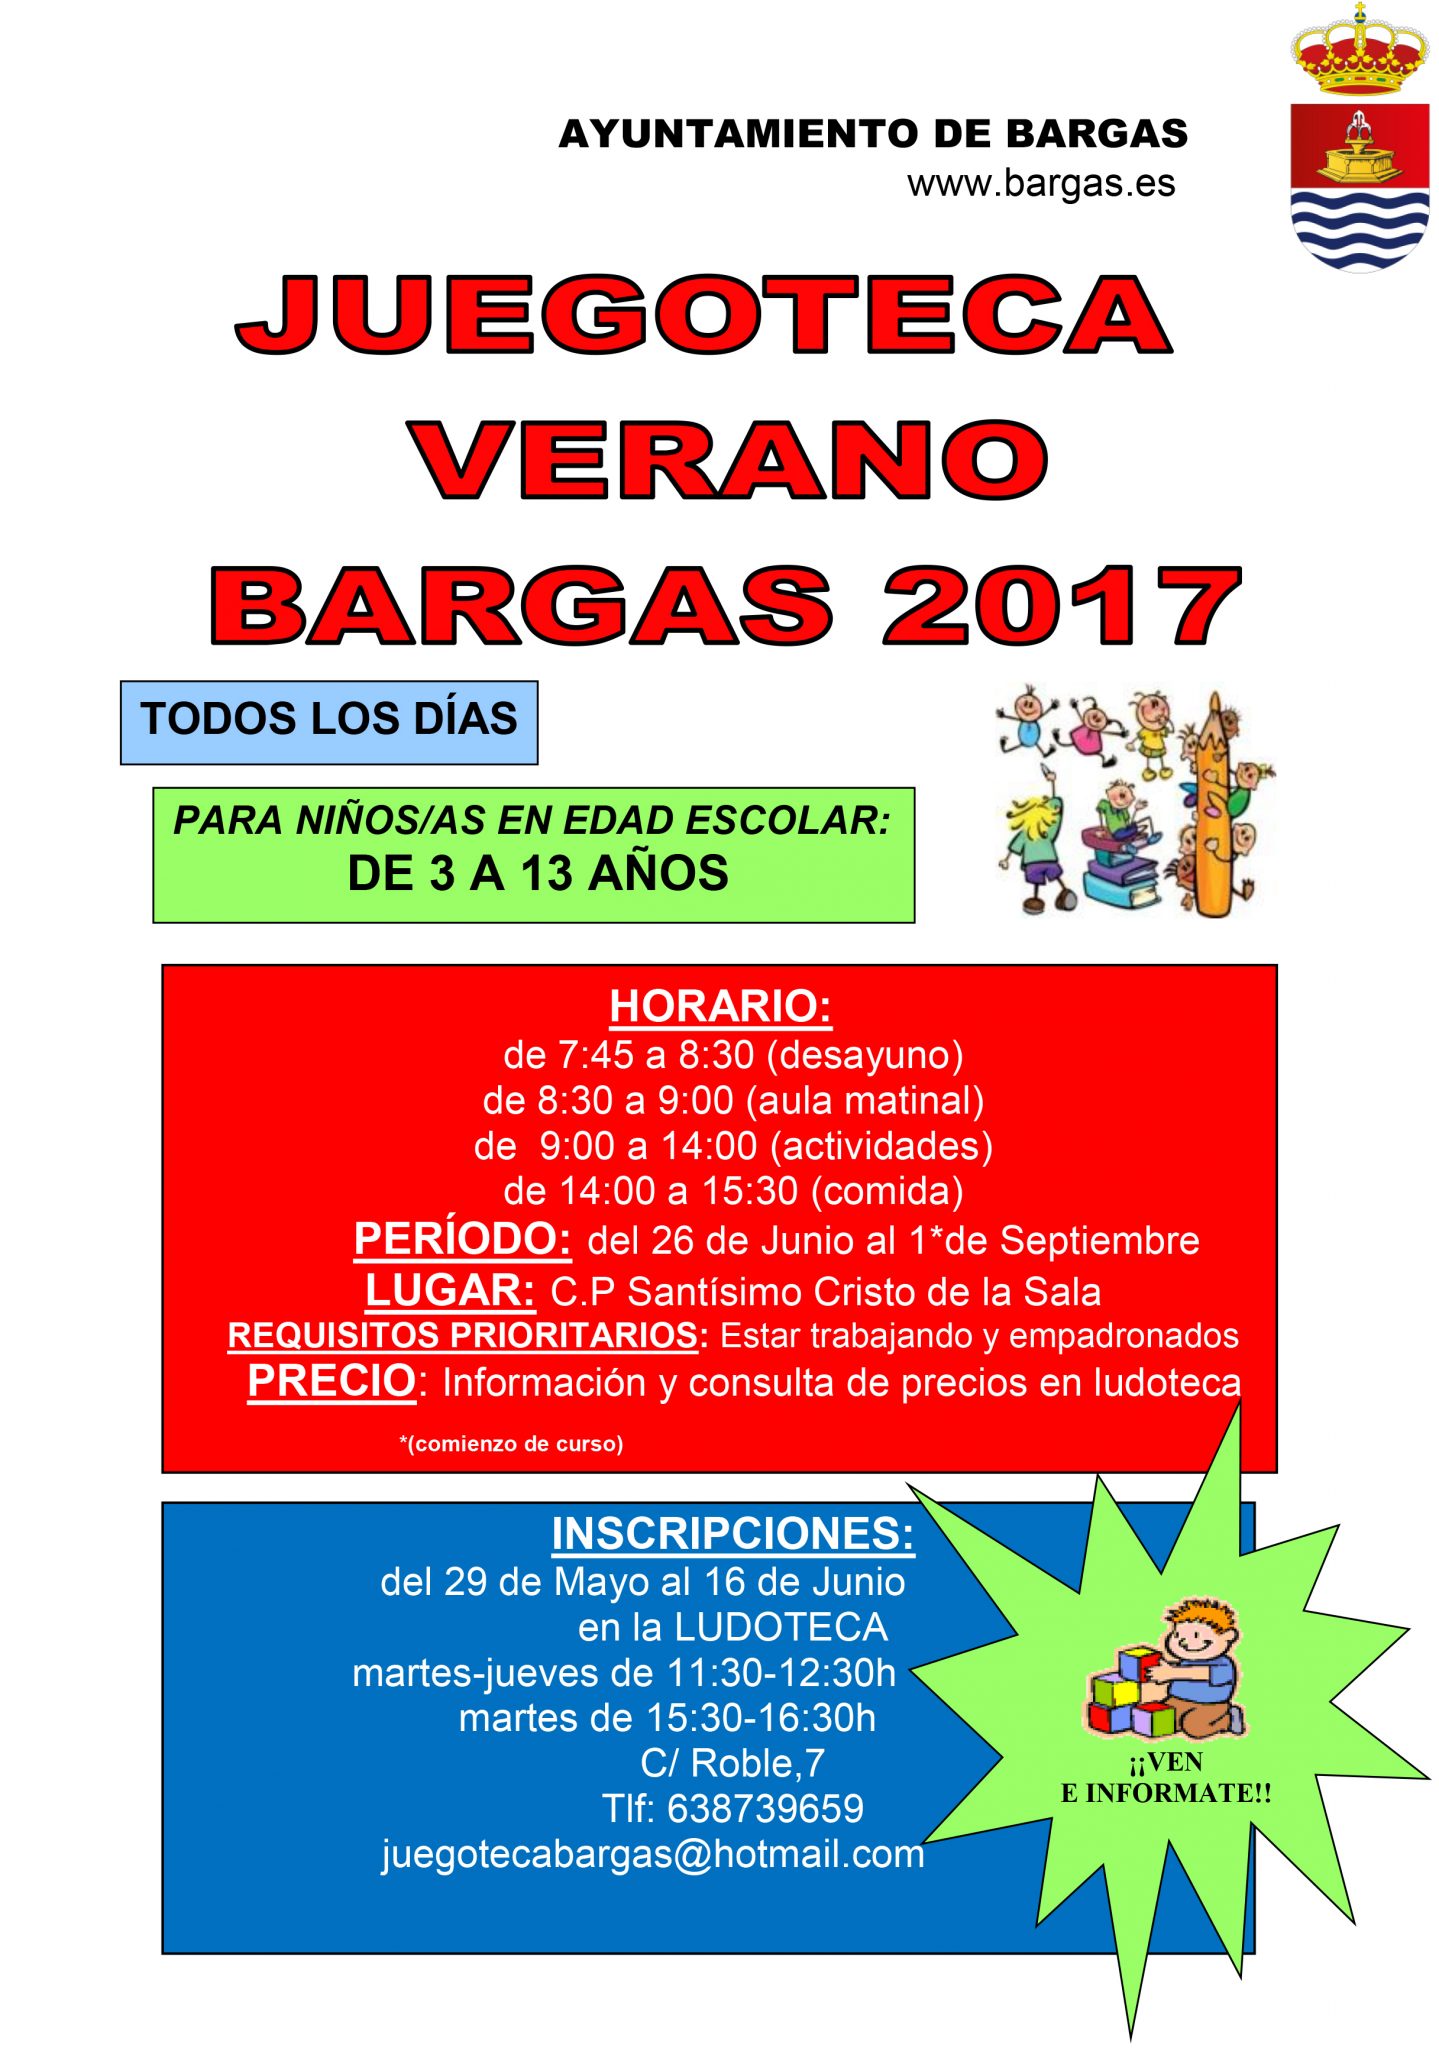 Juegoteca Bargas – Verano 2017